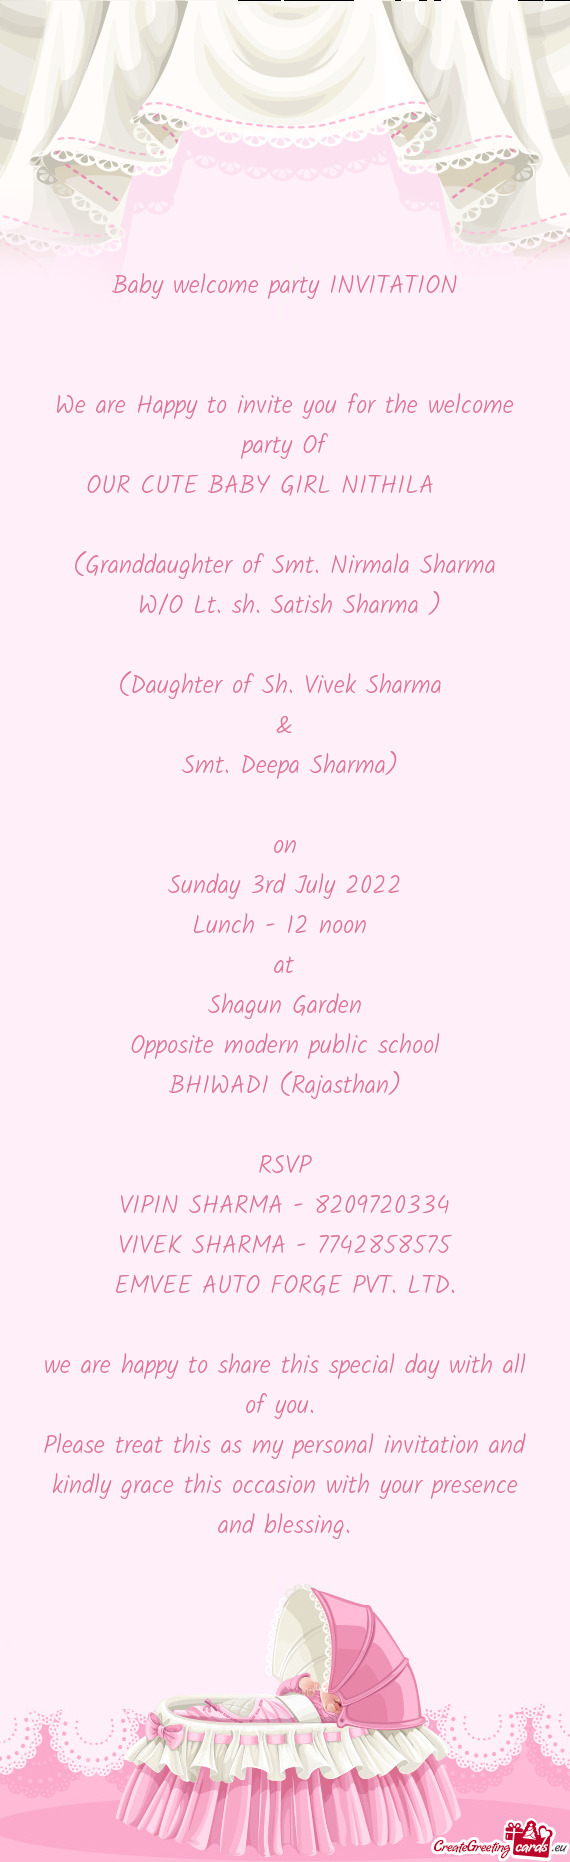 (Daughter of Sh. Vivek Sharma